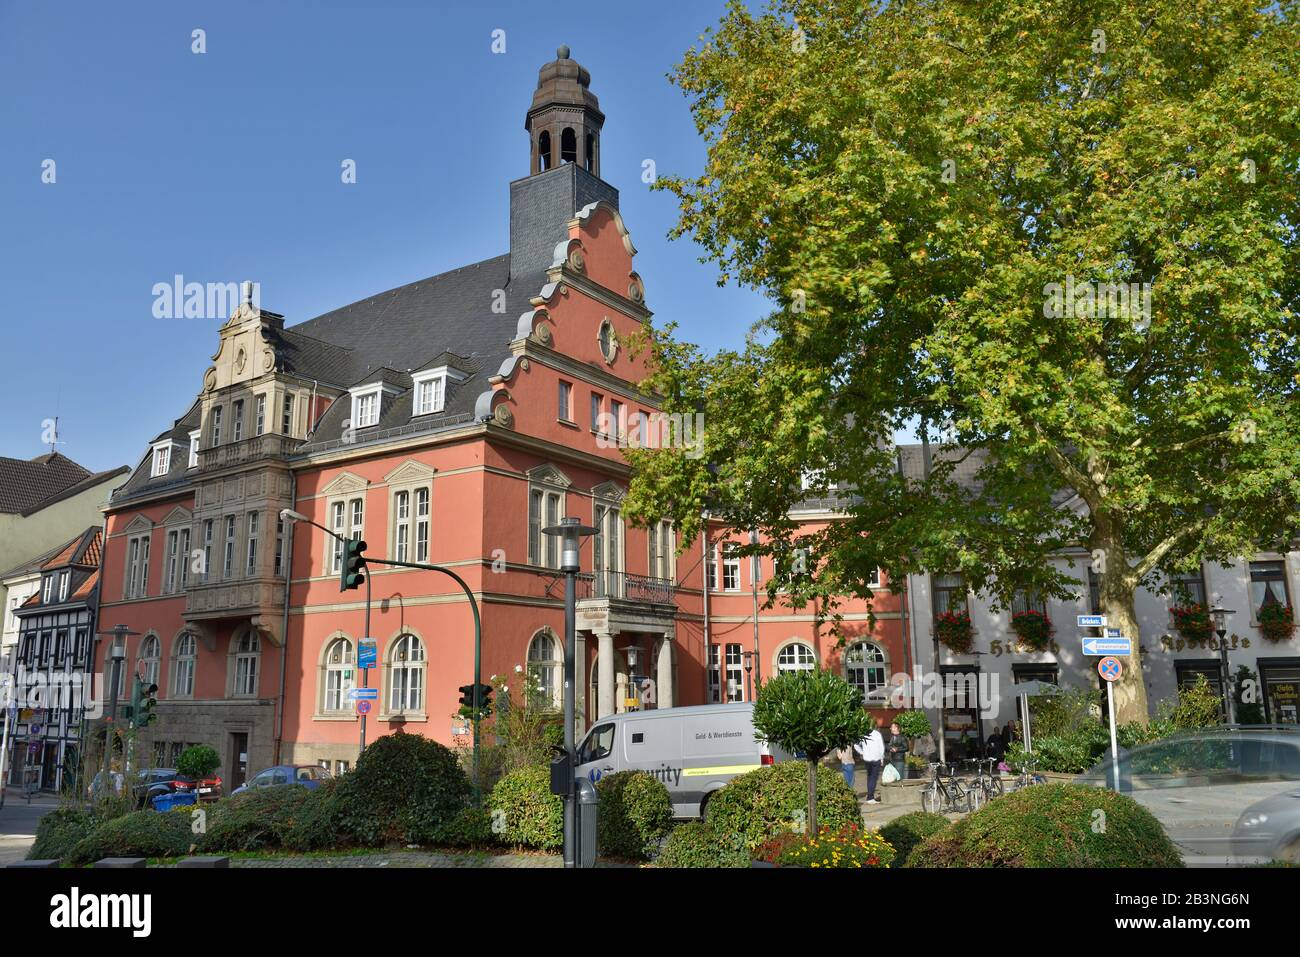 Rathaus, Altstadt, Werden, Essen, Nordrhein-Westfalen, Deutschland Stock Photo